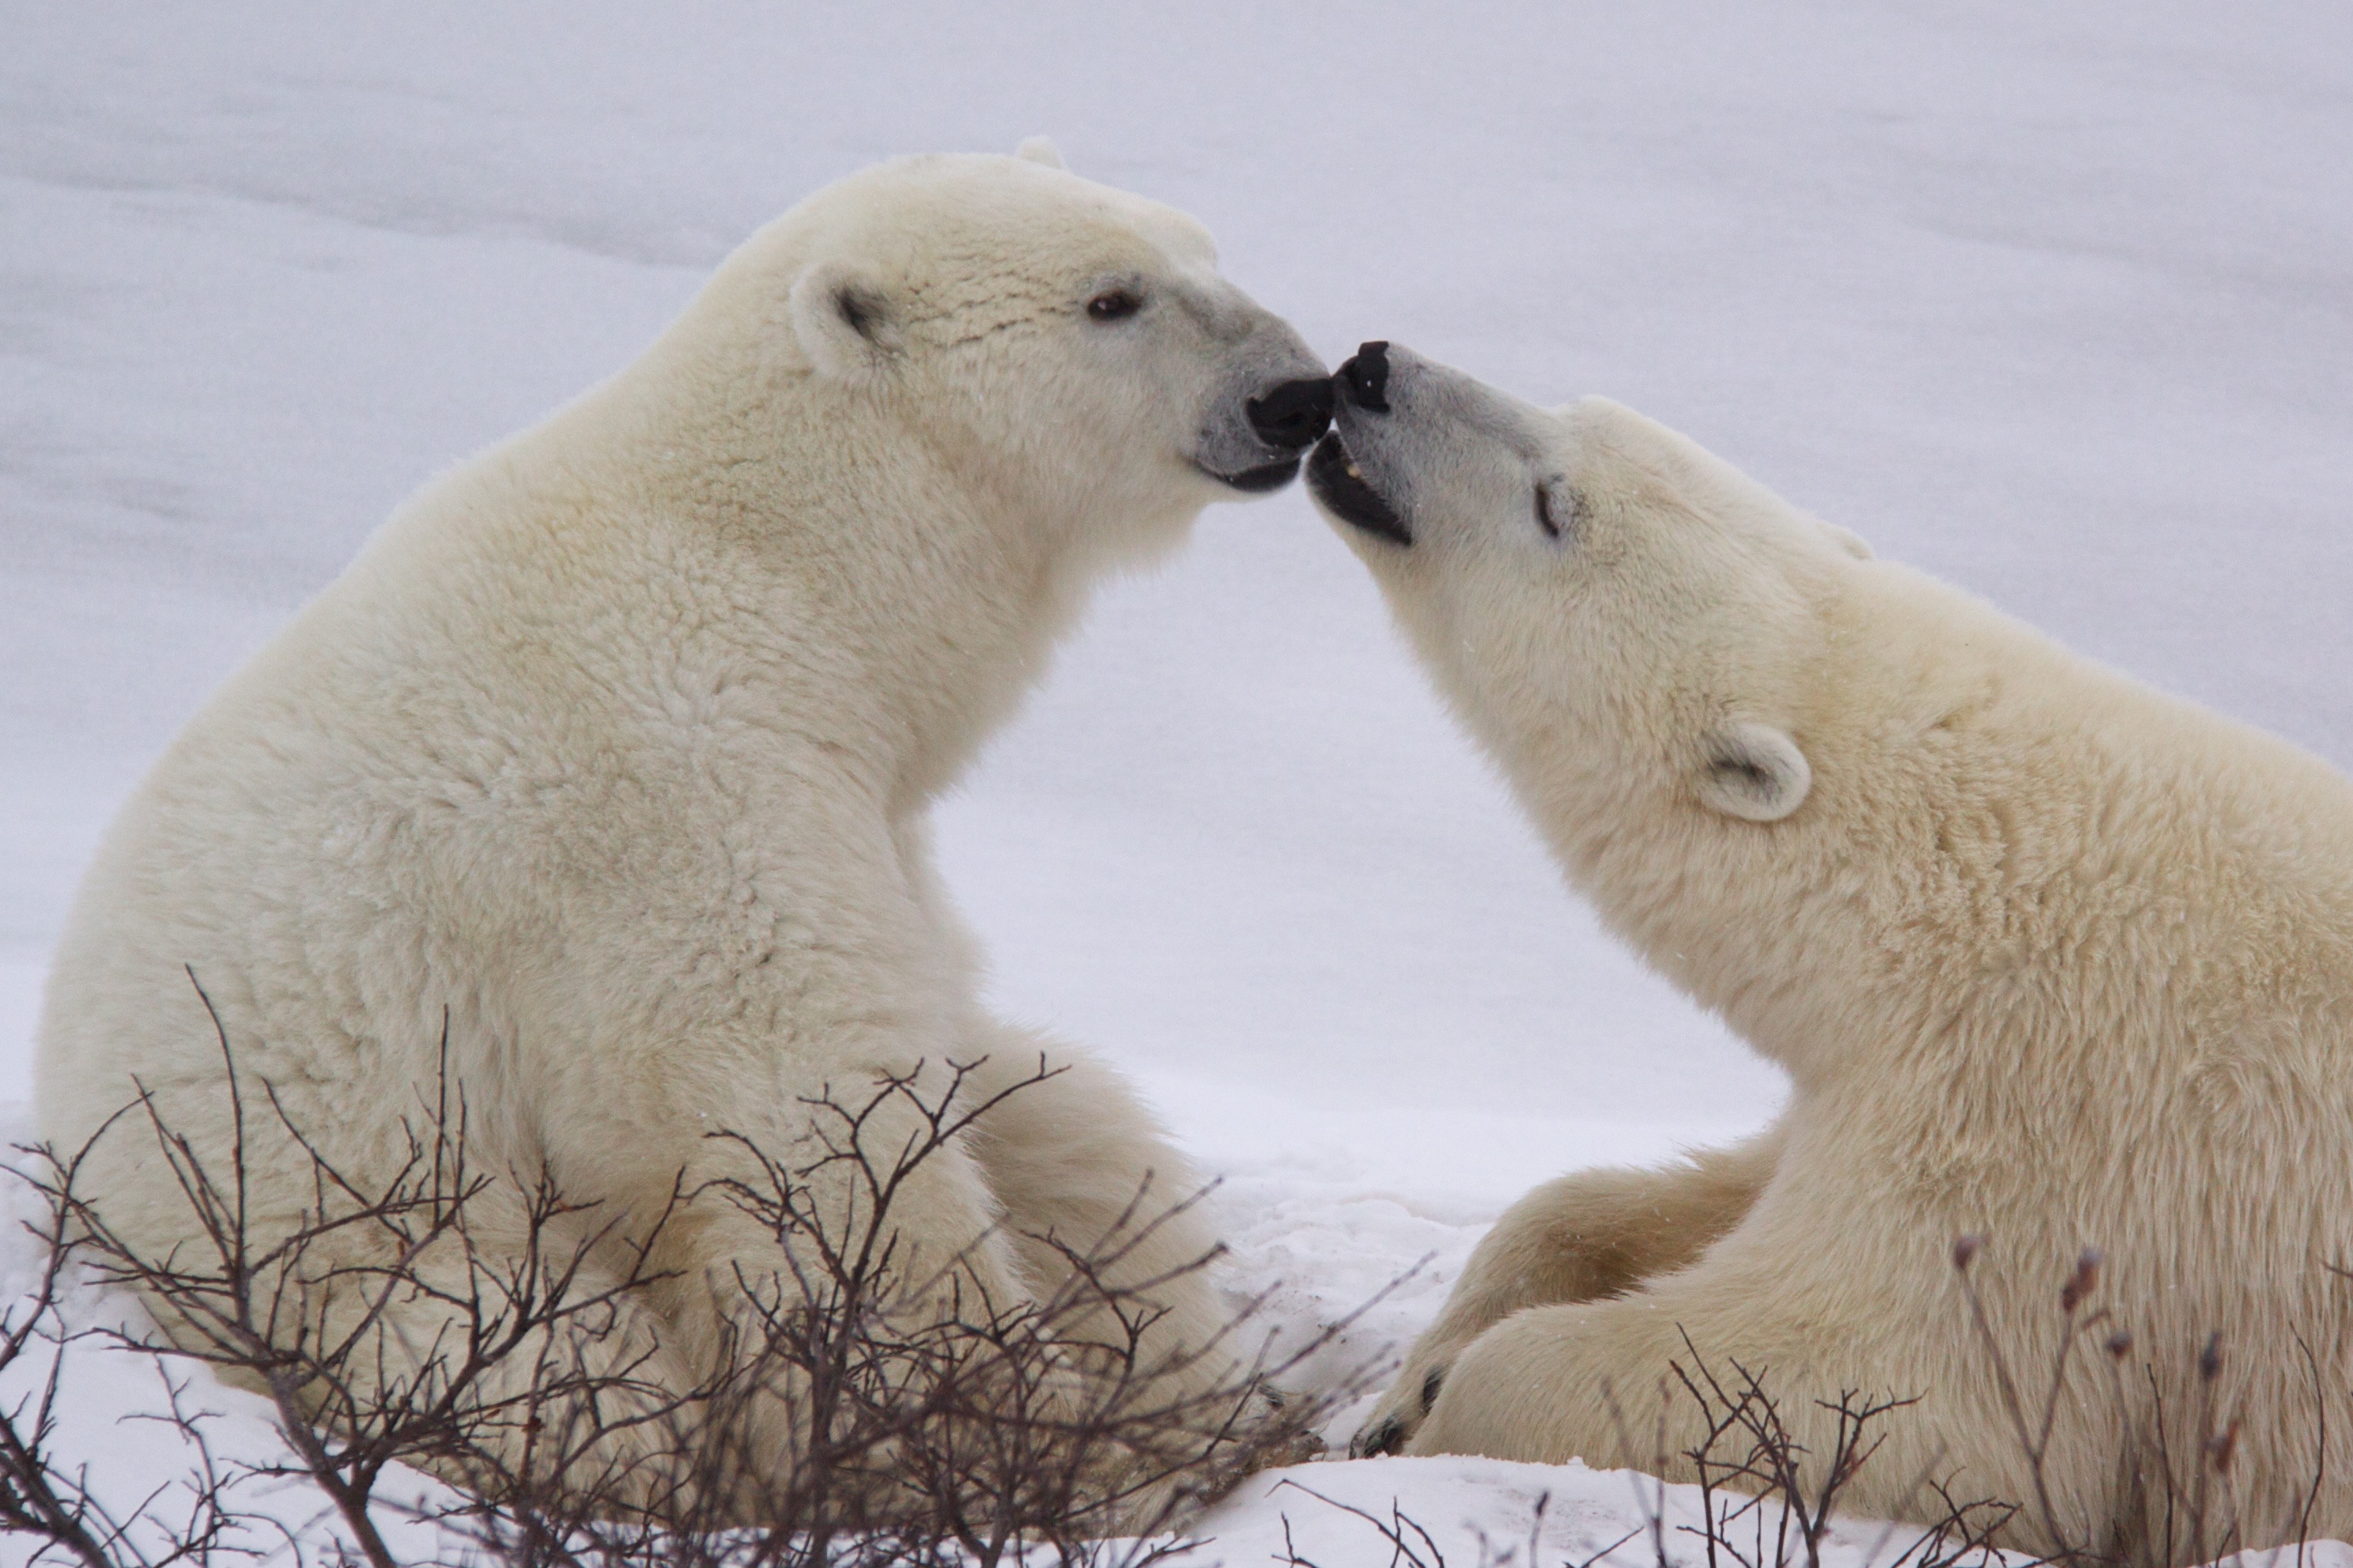 Résultat de recherche d'images pour "kisses of bears"